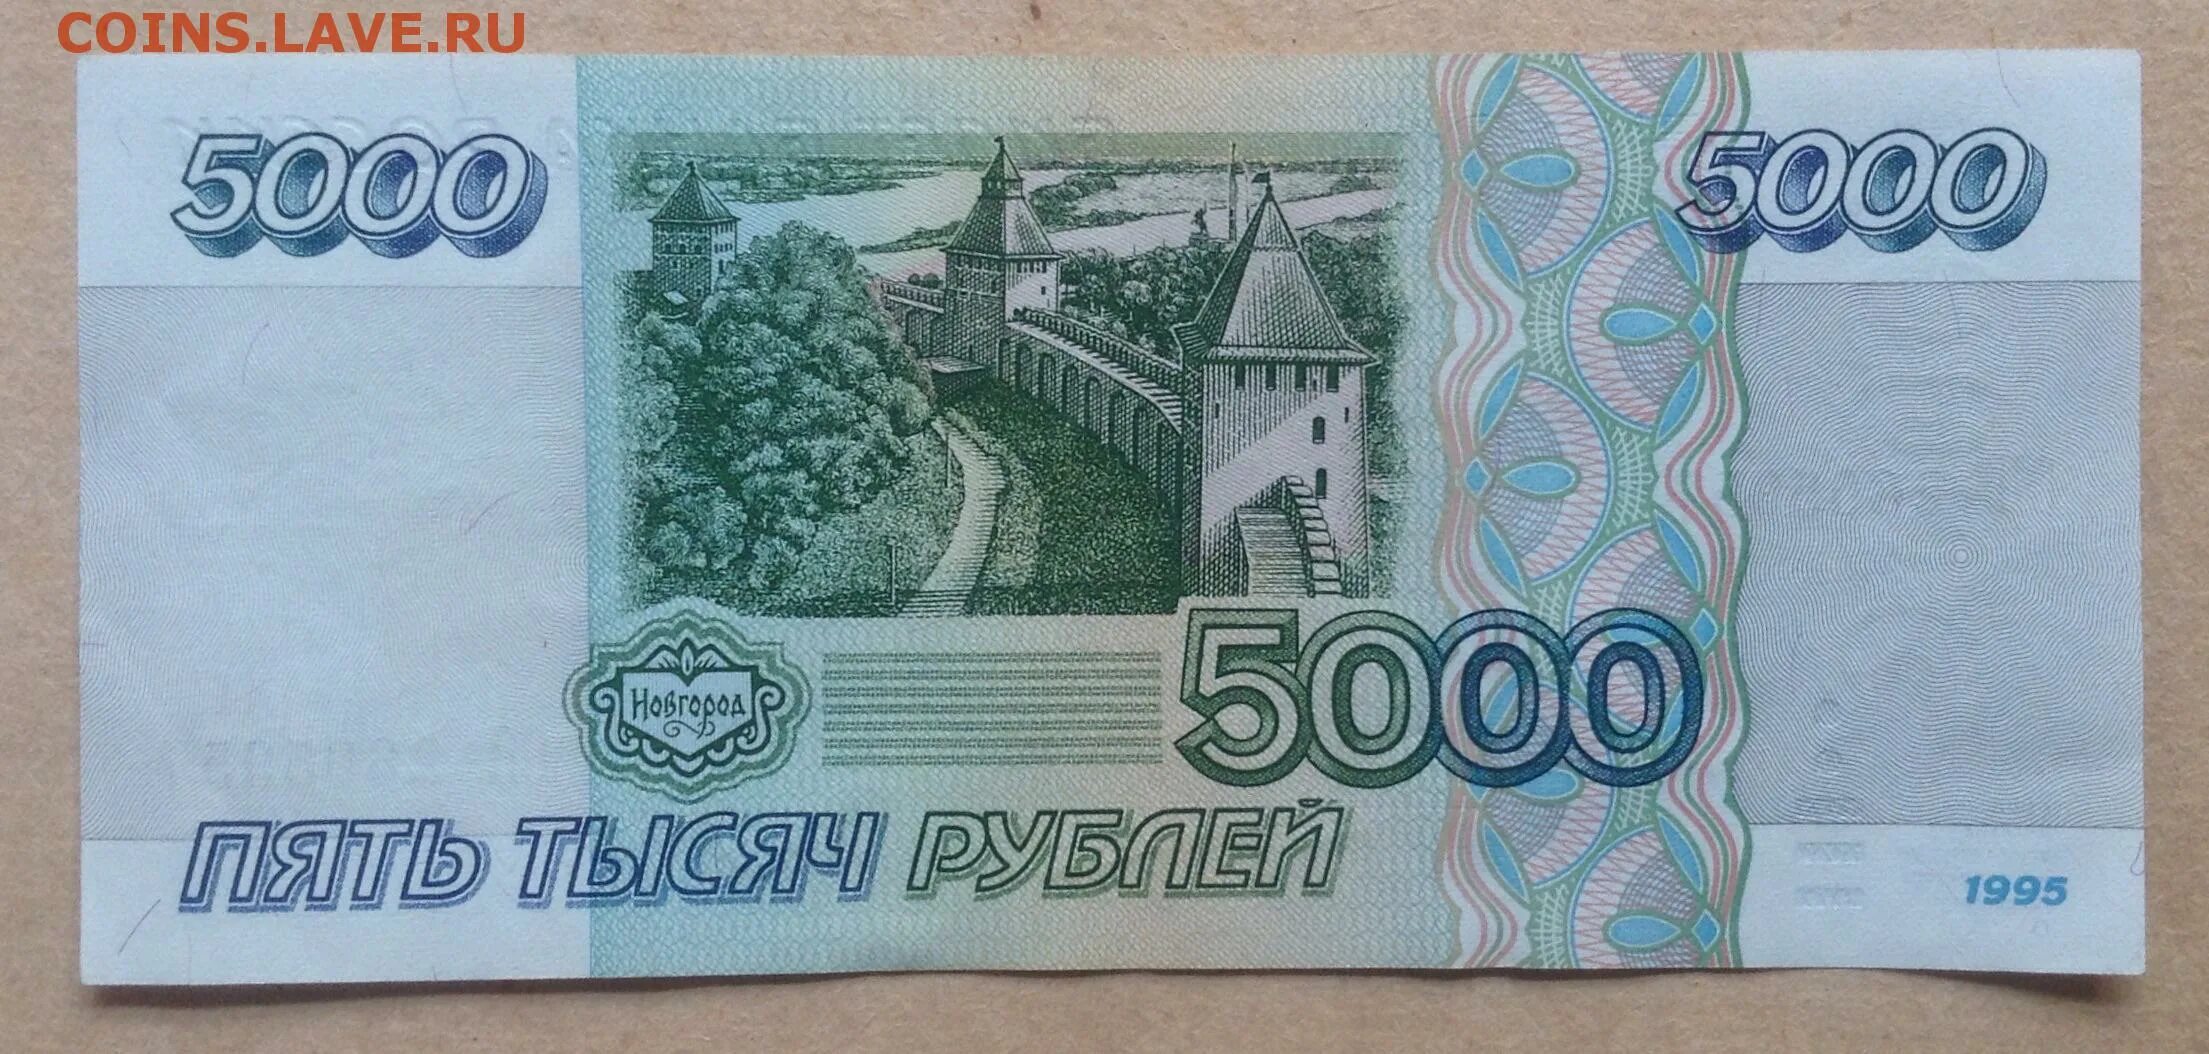 5000 рублей 1995. 1995 Ел.